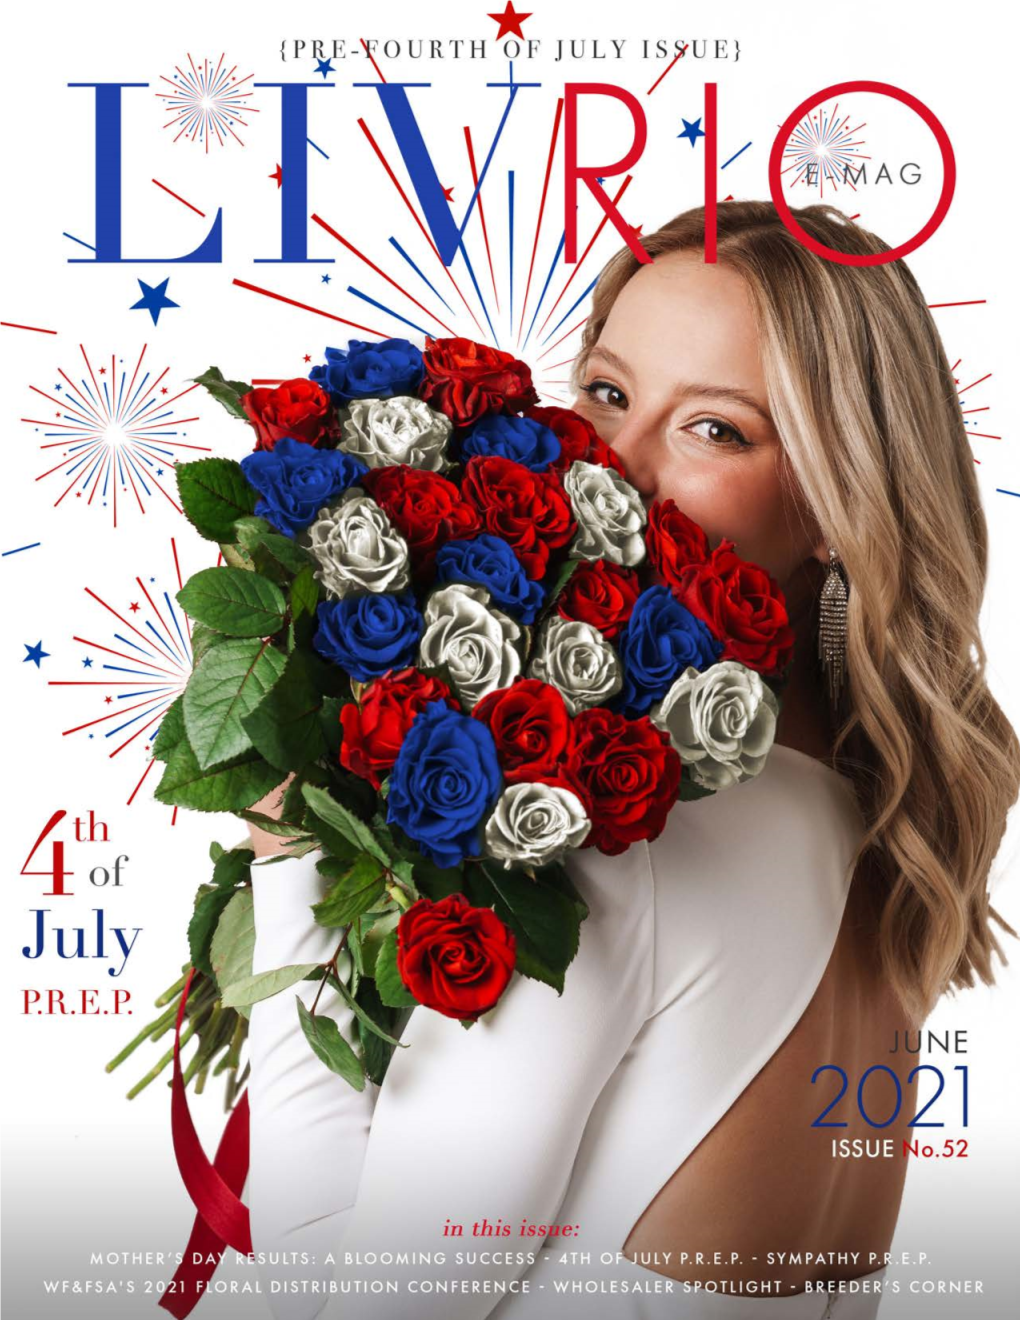 Rioroses.Com 1 Livrio the E-Magazine of Rio Roses